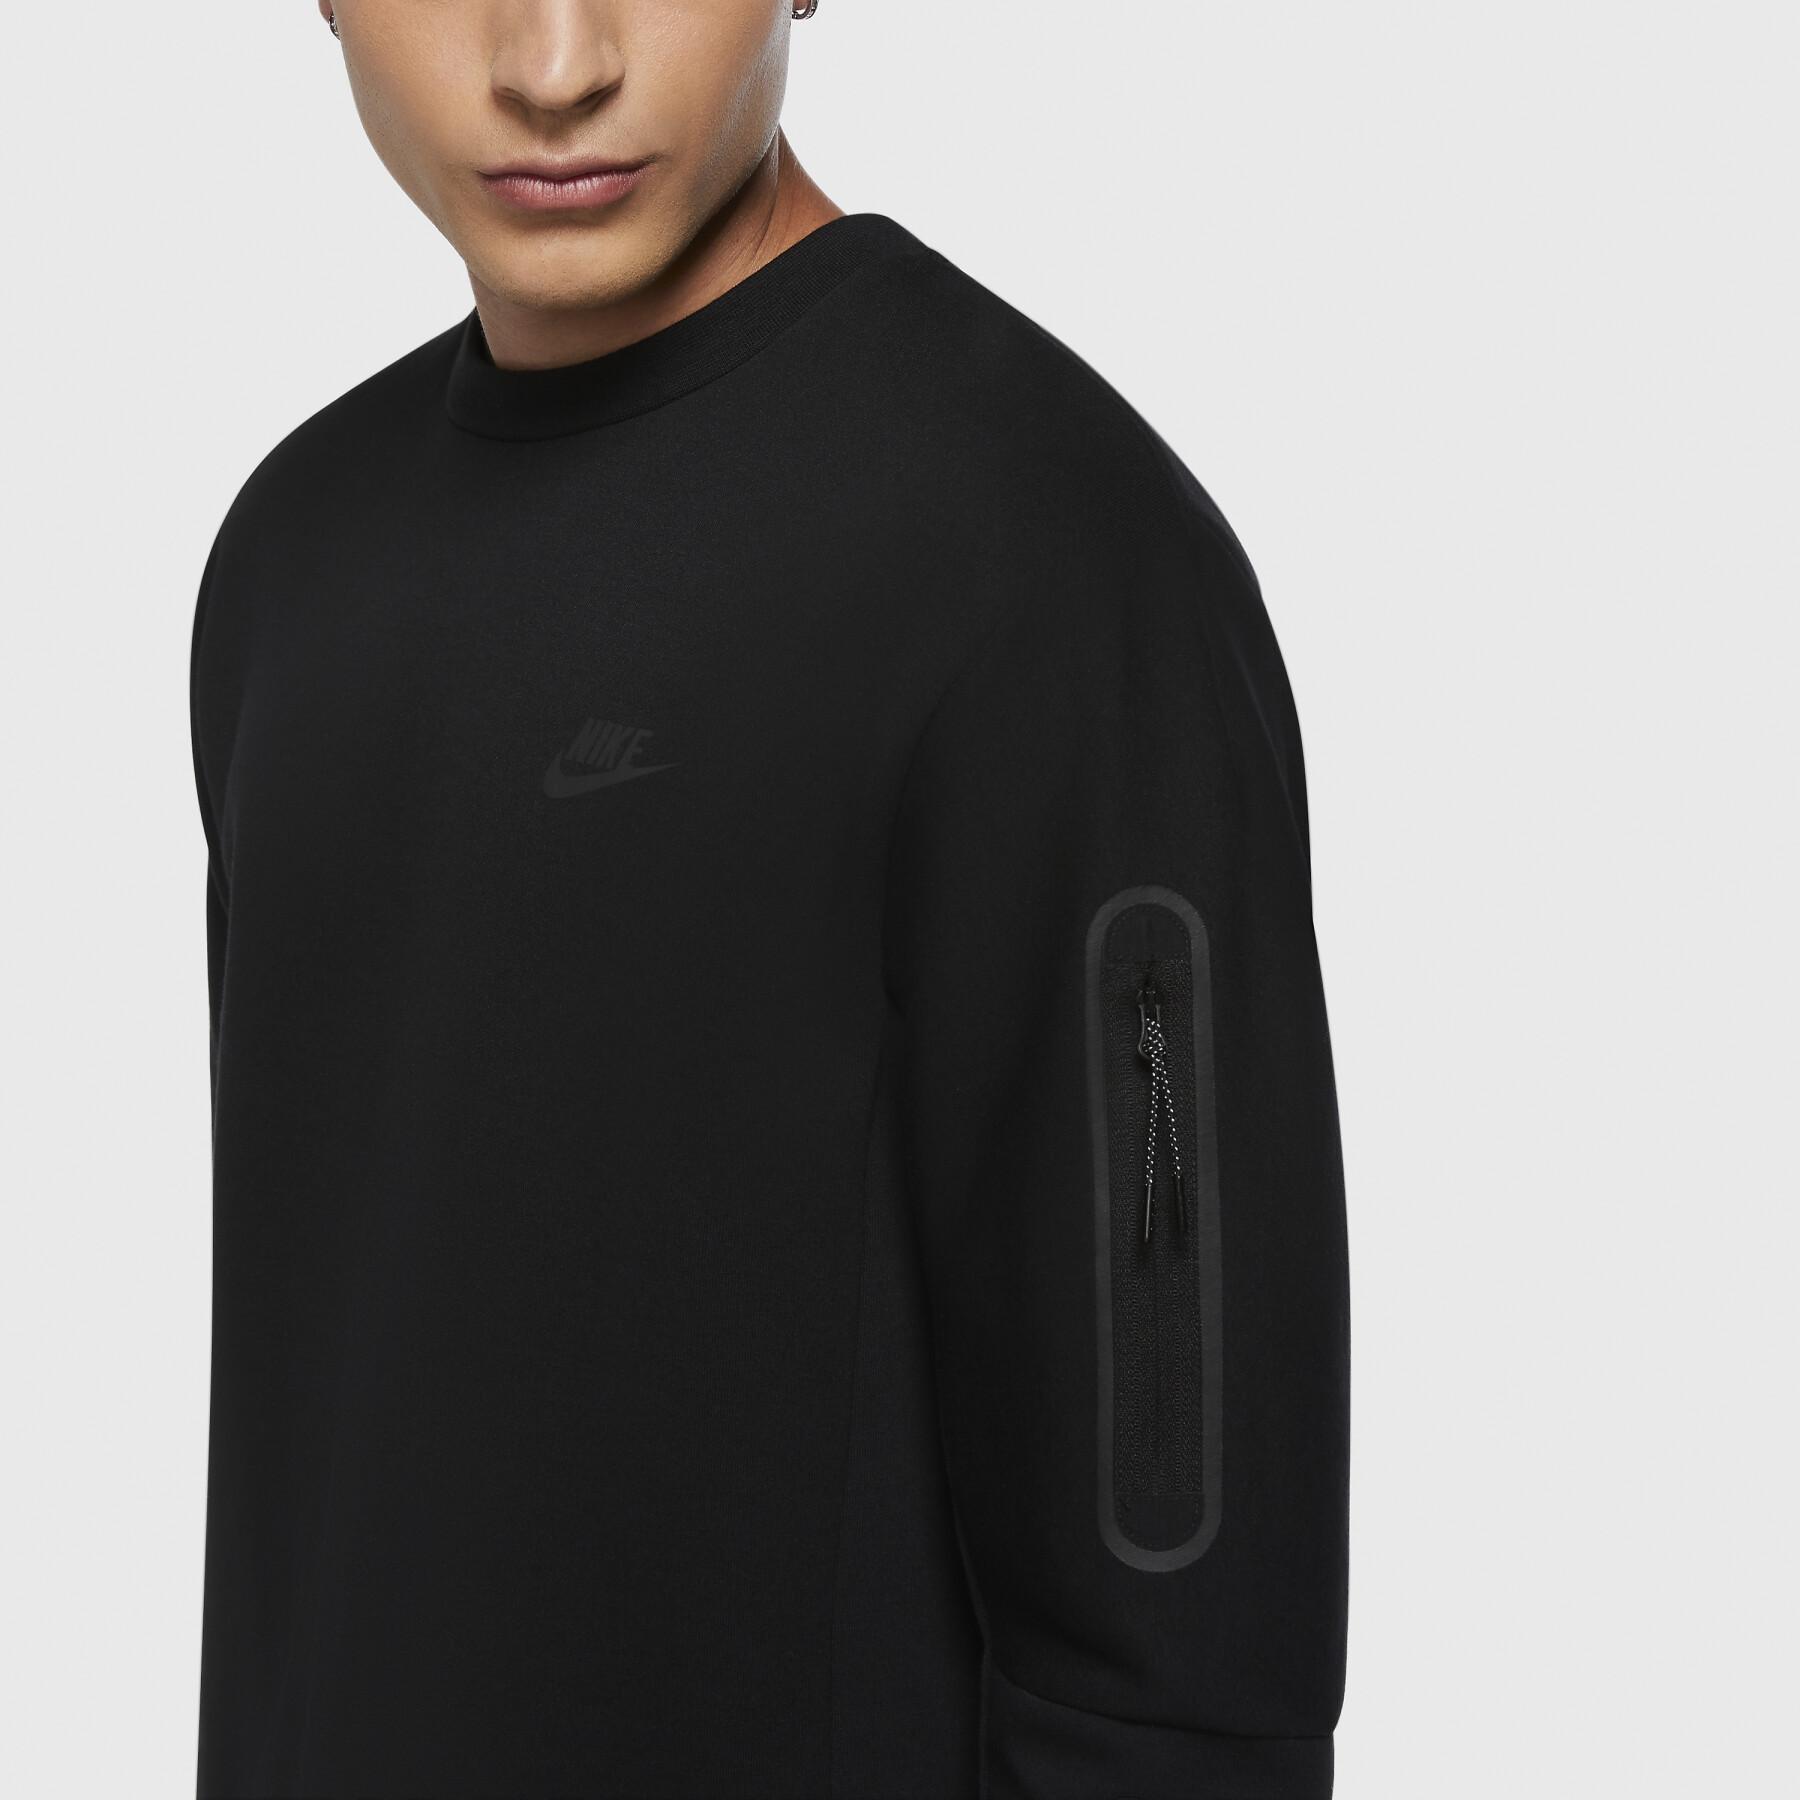 Sweatshirt Nike Sportswear Tech Fleece